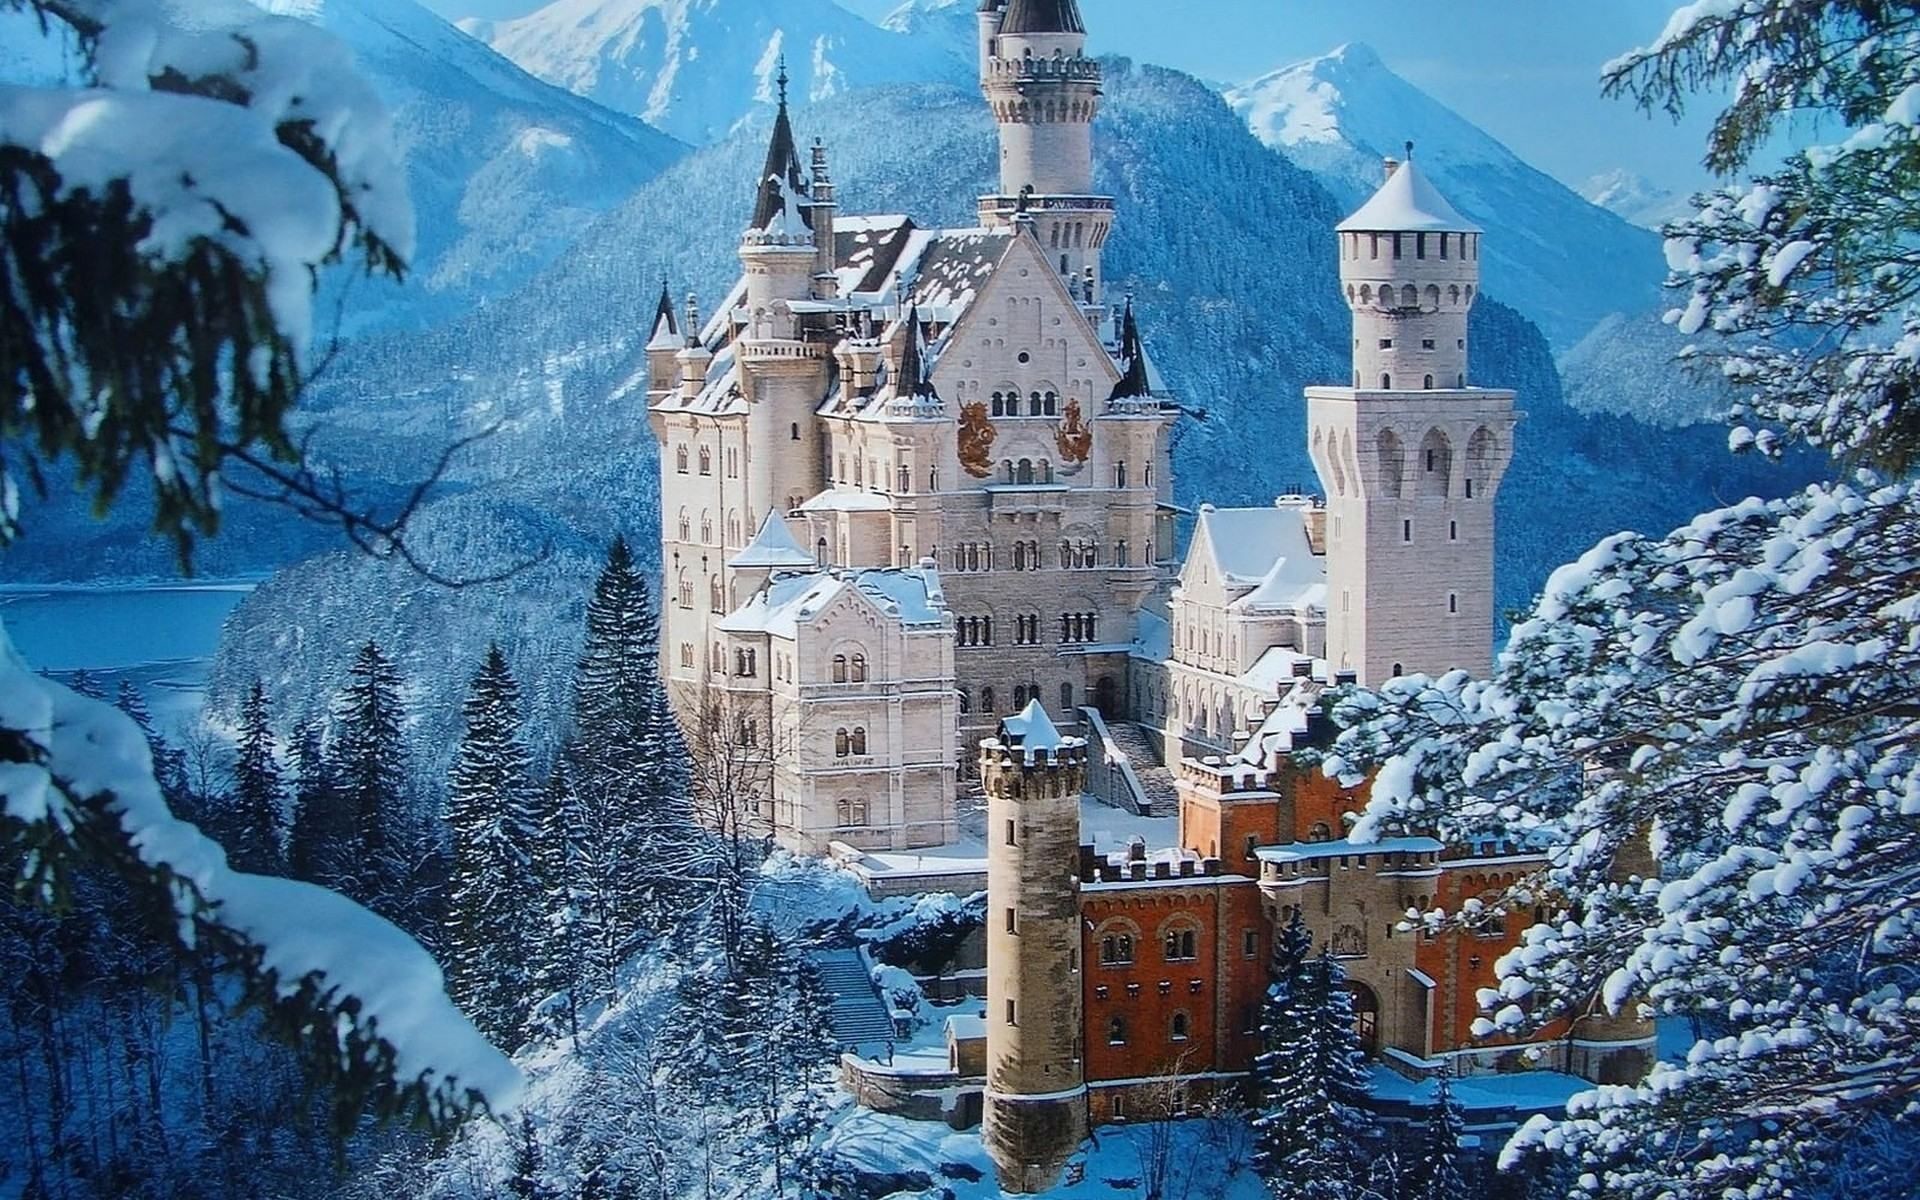 fond d'écran de pays des merveilles d'hiver,château,château d'eau,ch teau,hiver,monde